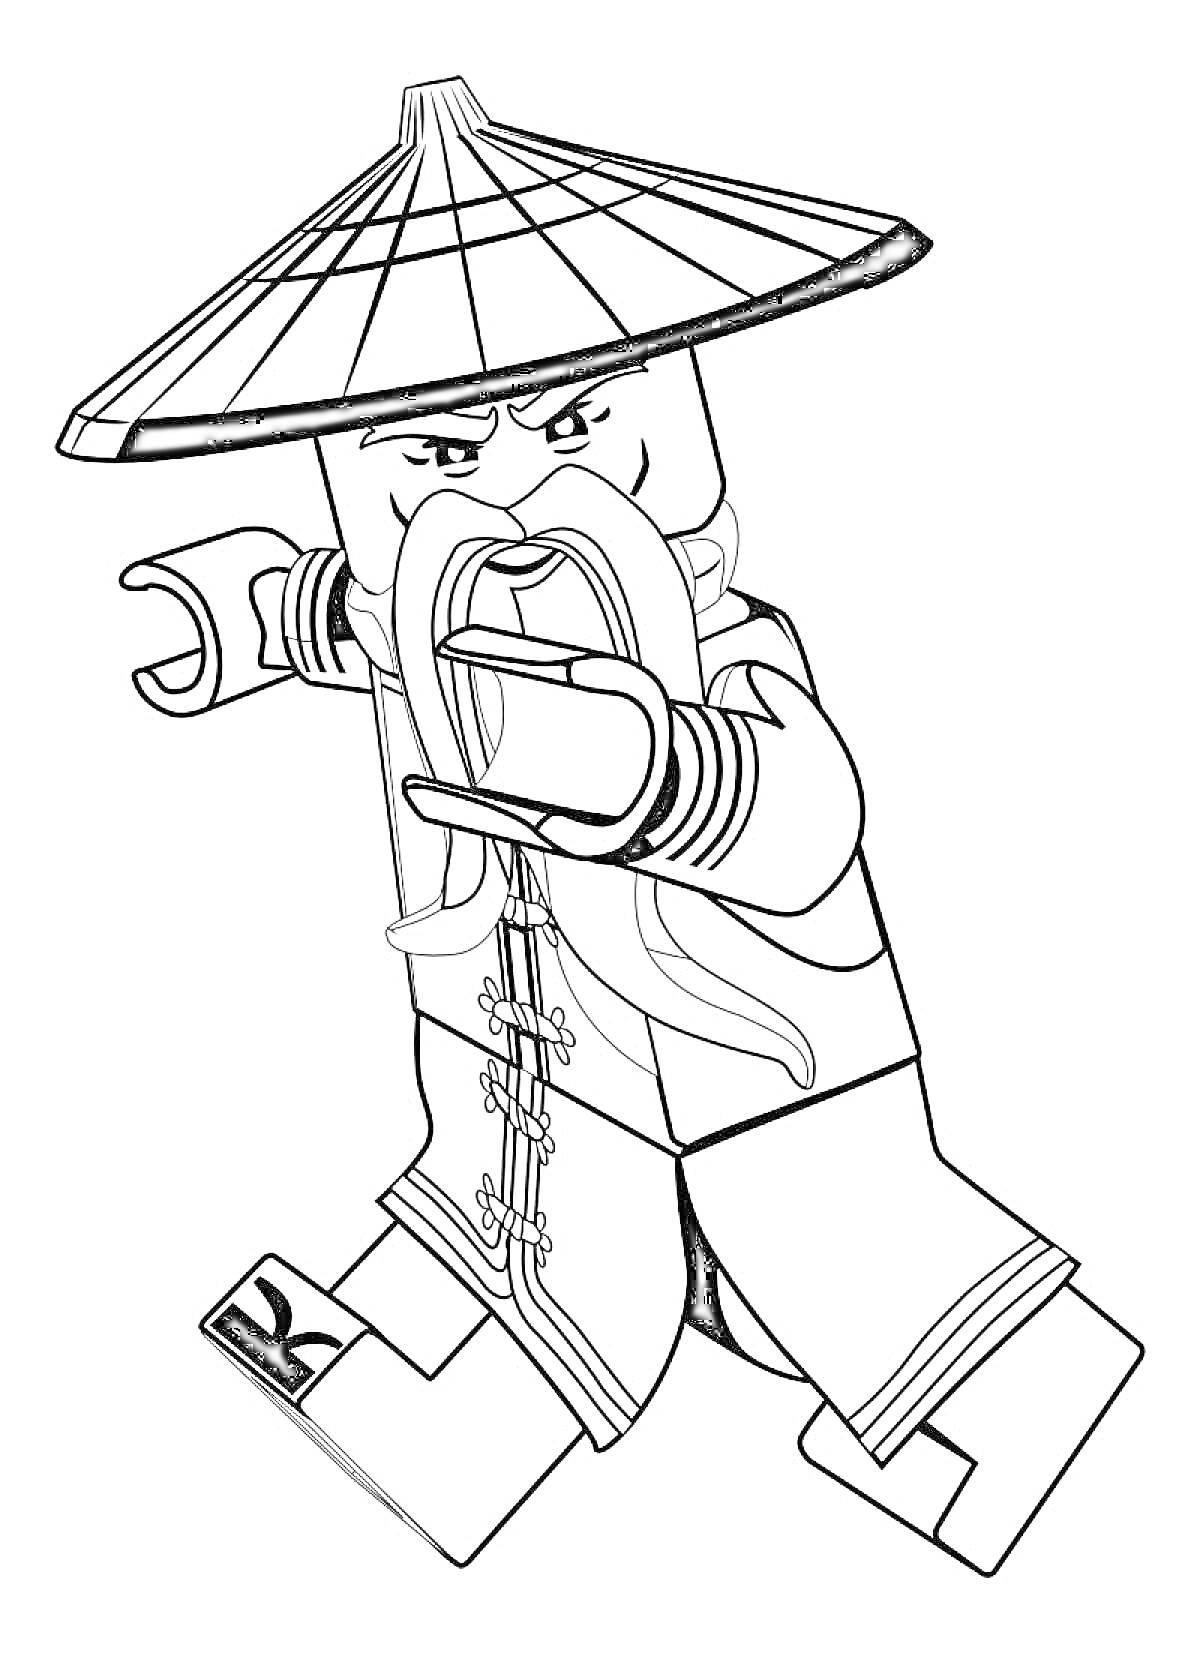 Раскраска Лего персонаж из Ниндзяго фильма в боевой позе, с длинной бородой и традиционной шляпой.